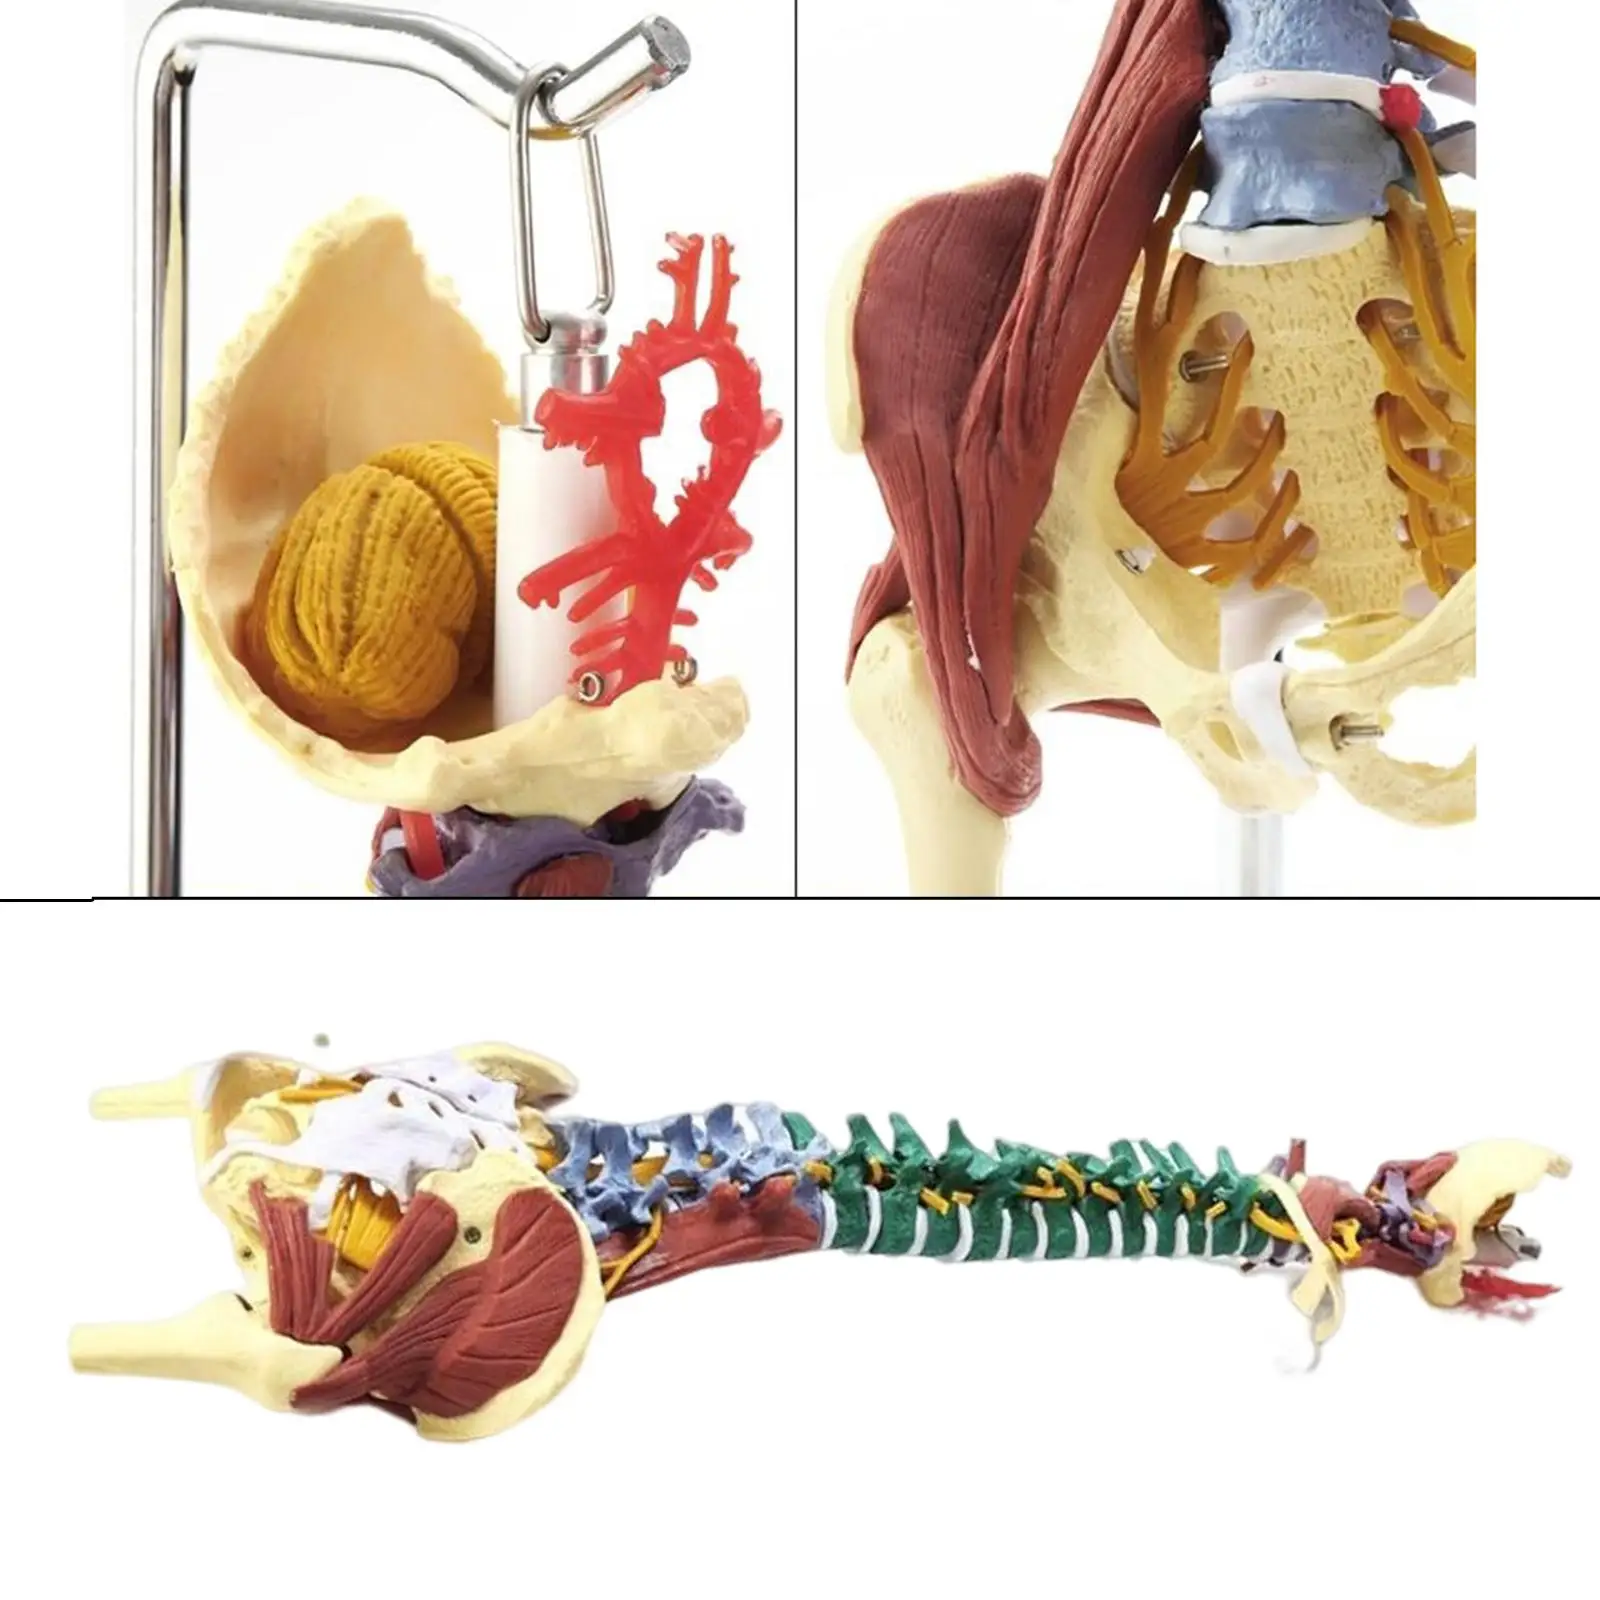 85センチメートル柔軟な脊椎モデル人体オルガンモデル脊髄教育モデル脊柱モデル観察教室 AliExpress